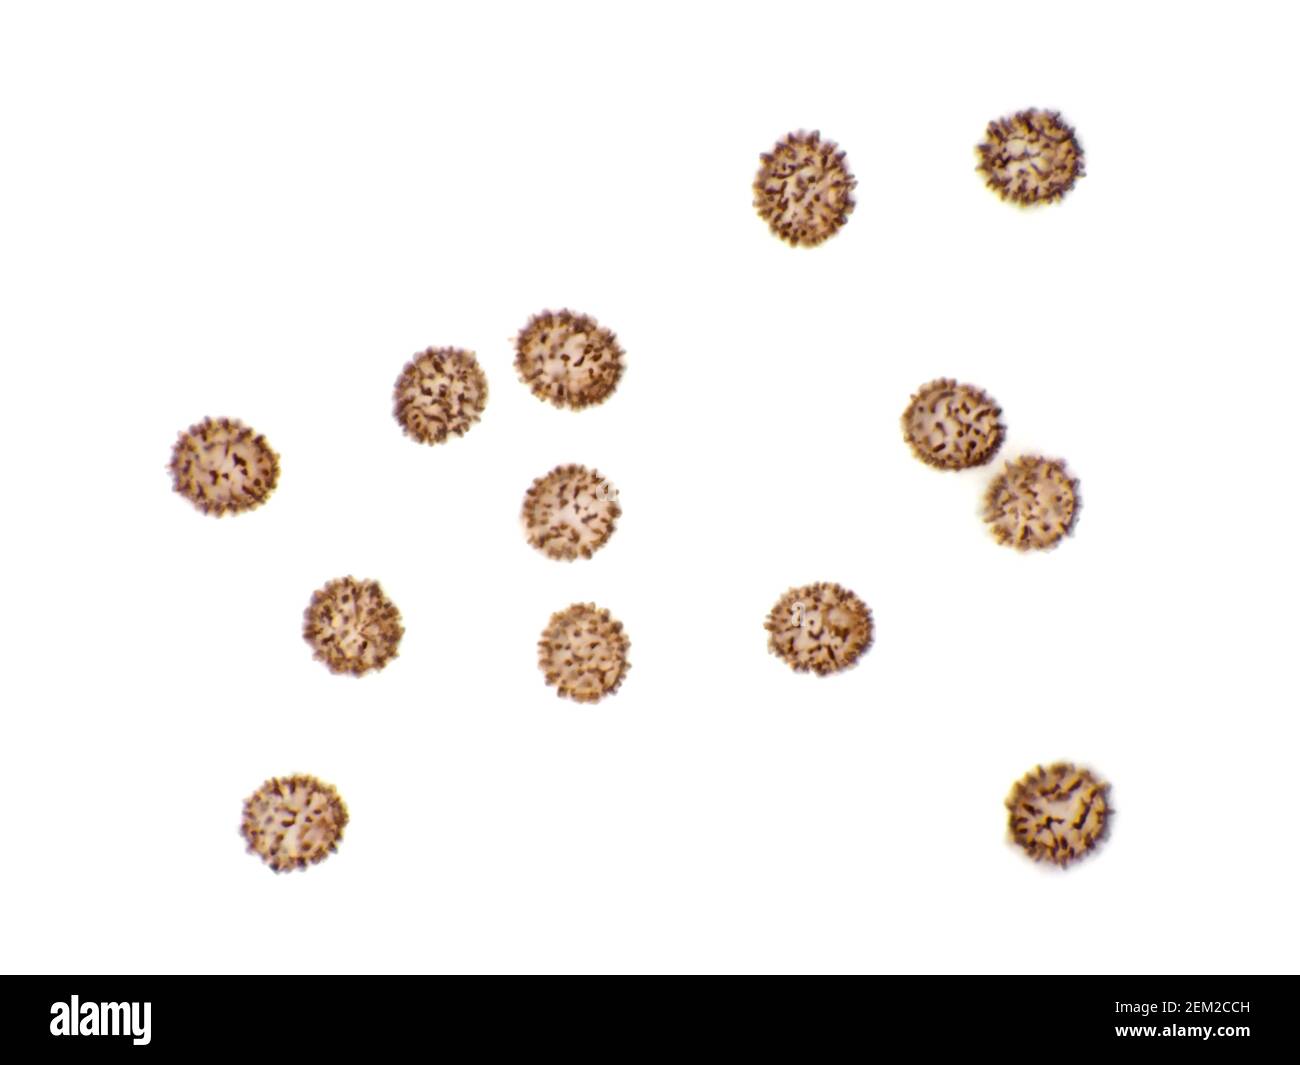 Esporas de russula (Russula brevipes) de tallo corto (teñidas con yodo) bajo el microscopio, el campo de visión horizontal es de aproximadamente 115 micrones Foto de stock